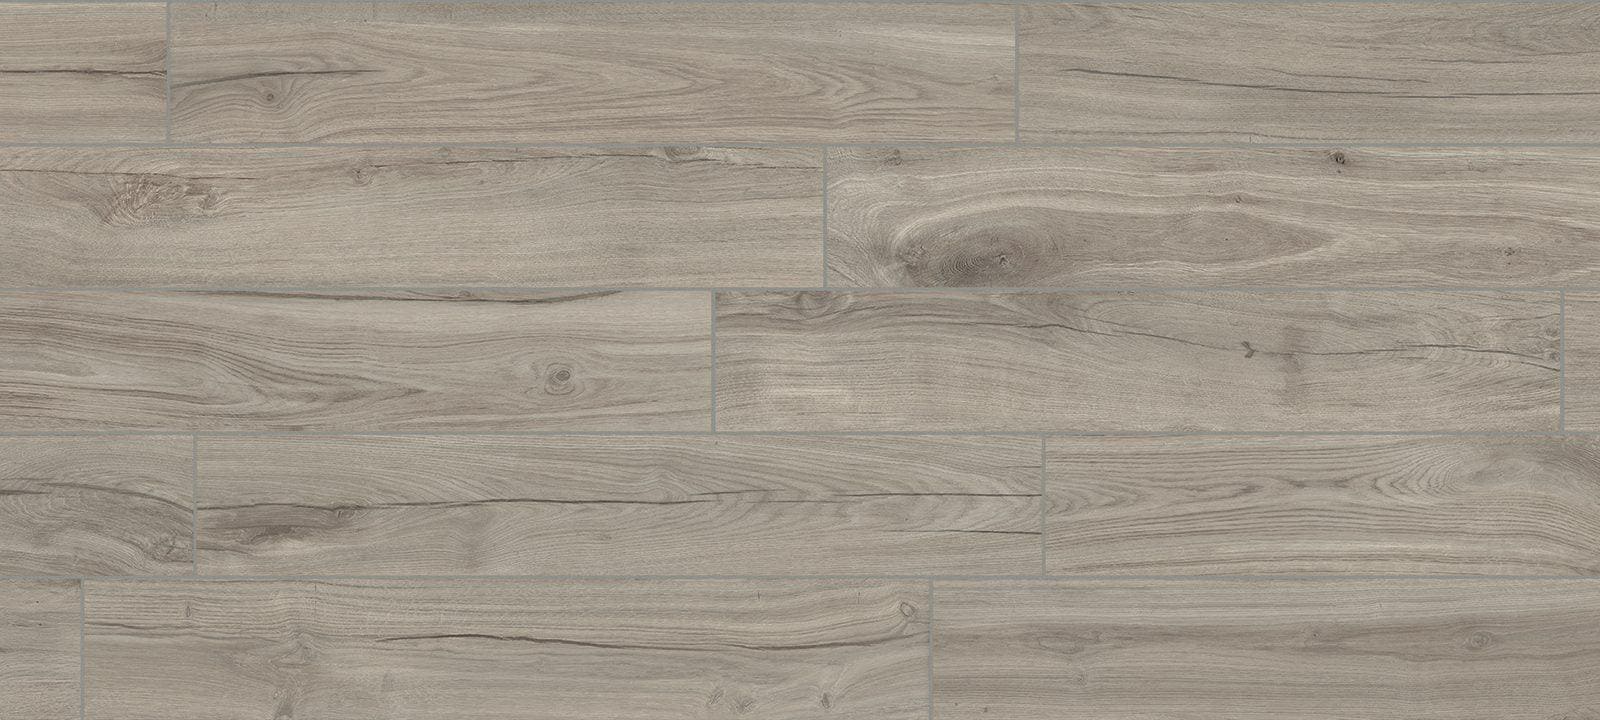 Minoli Tiles – Wood Effect 20 x 120 x 0.9cm Sold by 1.44m² Jurupa Cool Matt